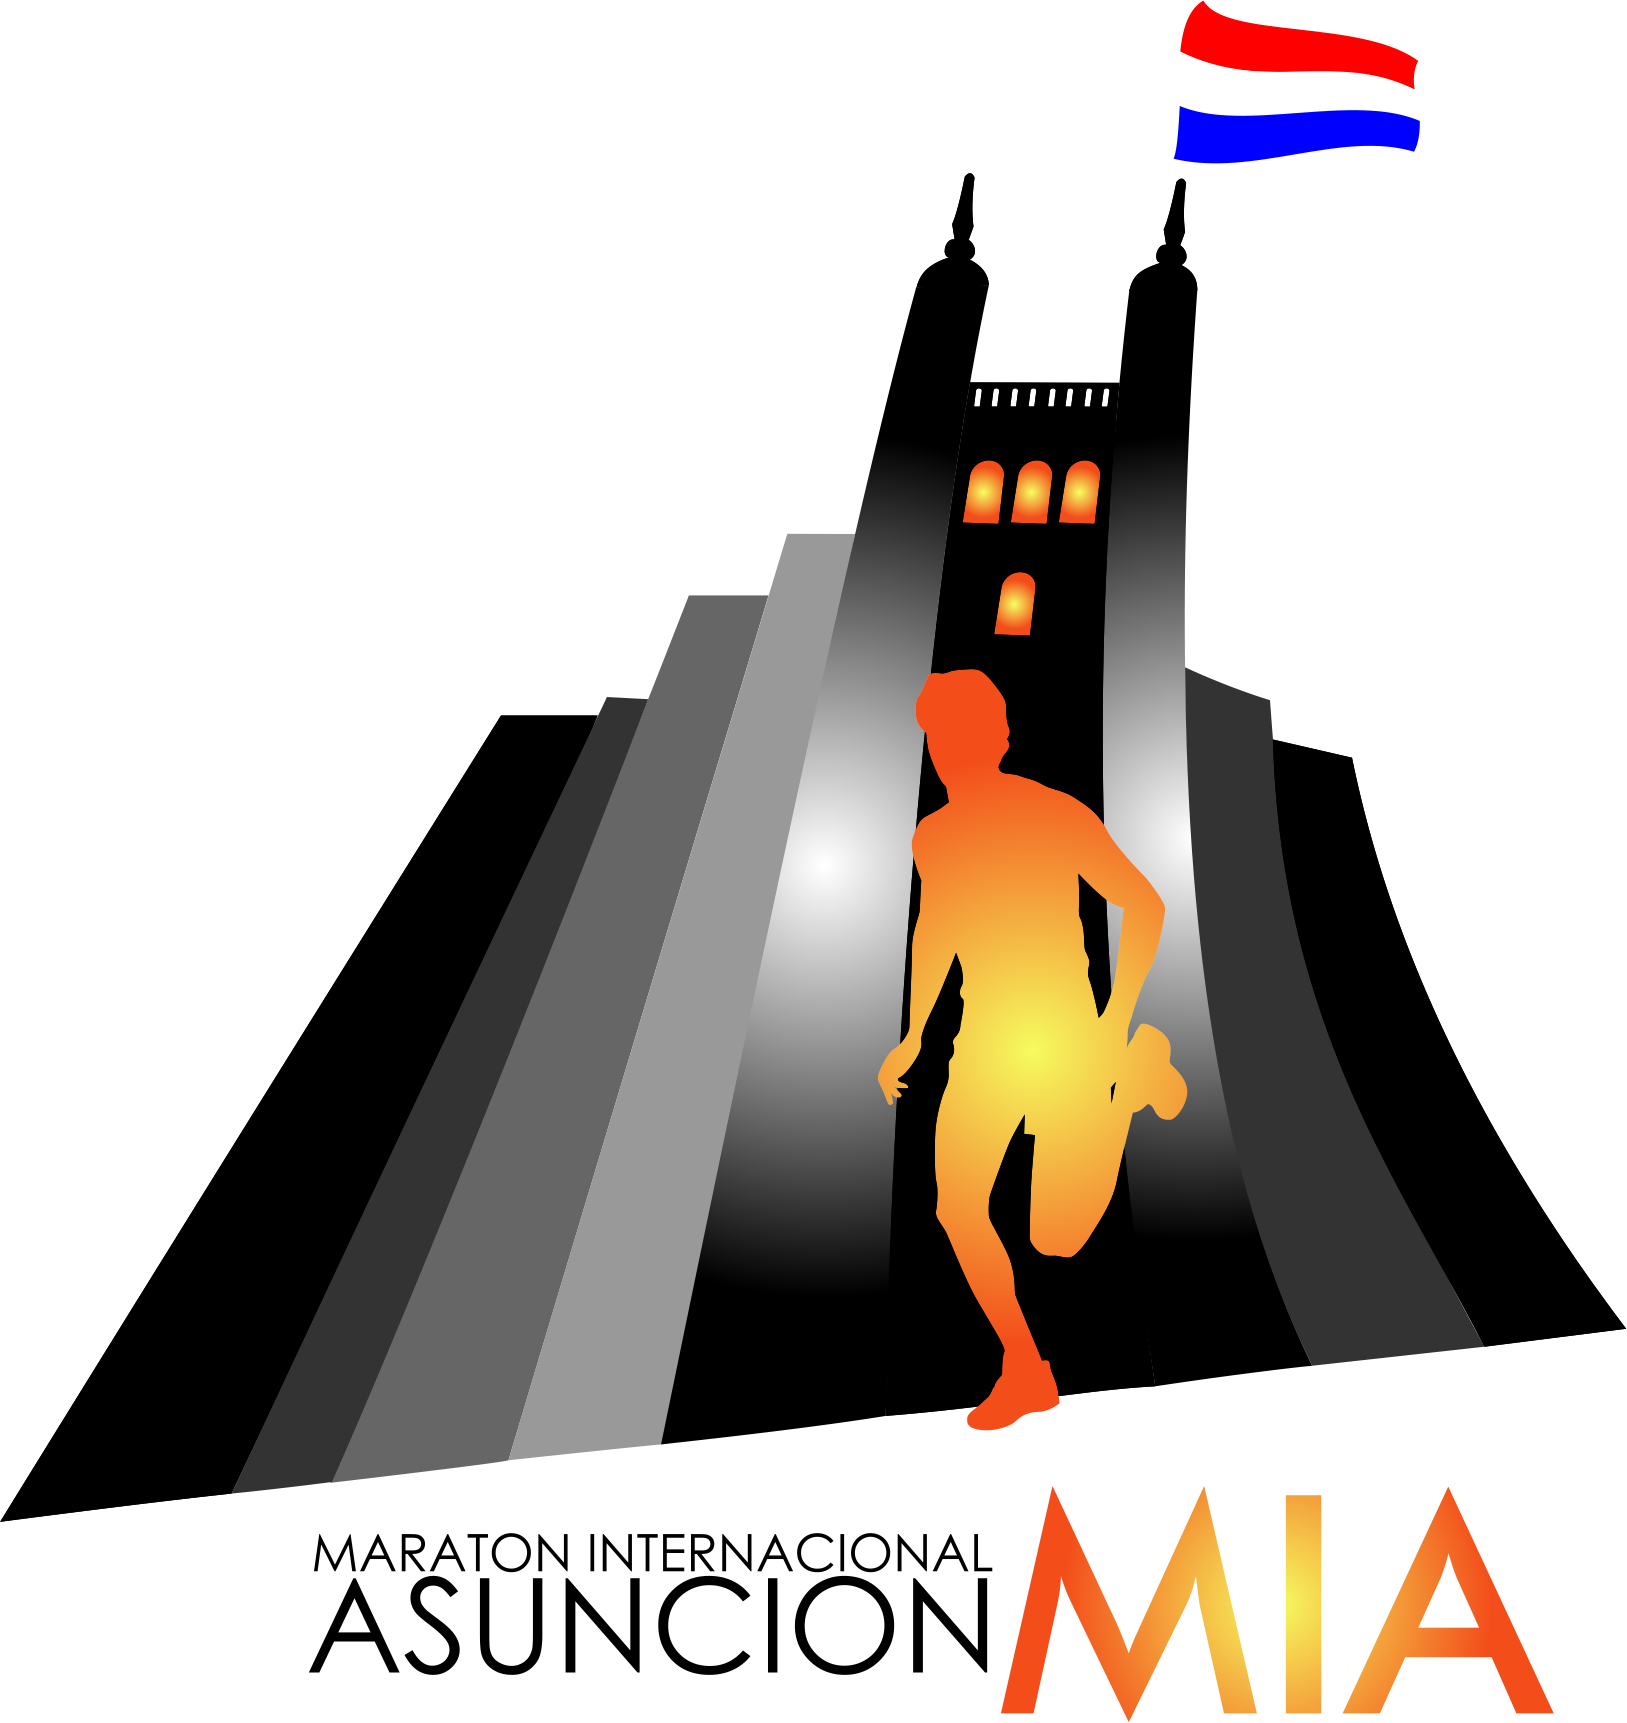 Maraton Internacional de Asunción - MIA 2012